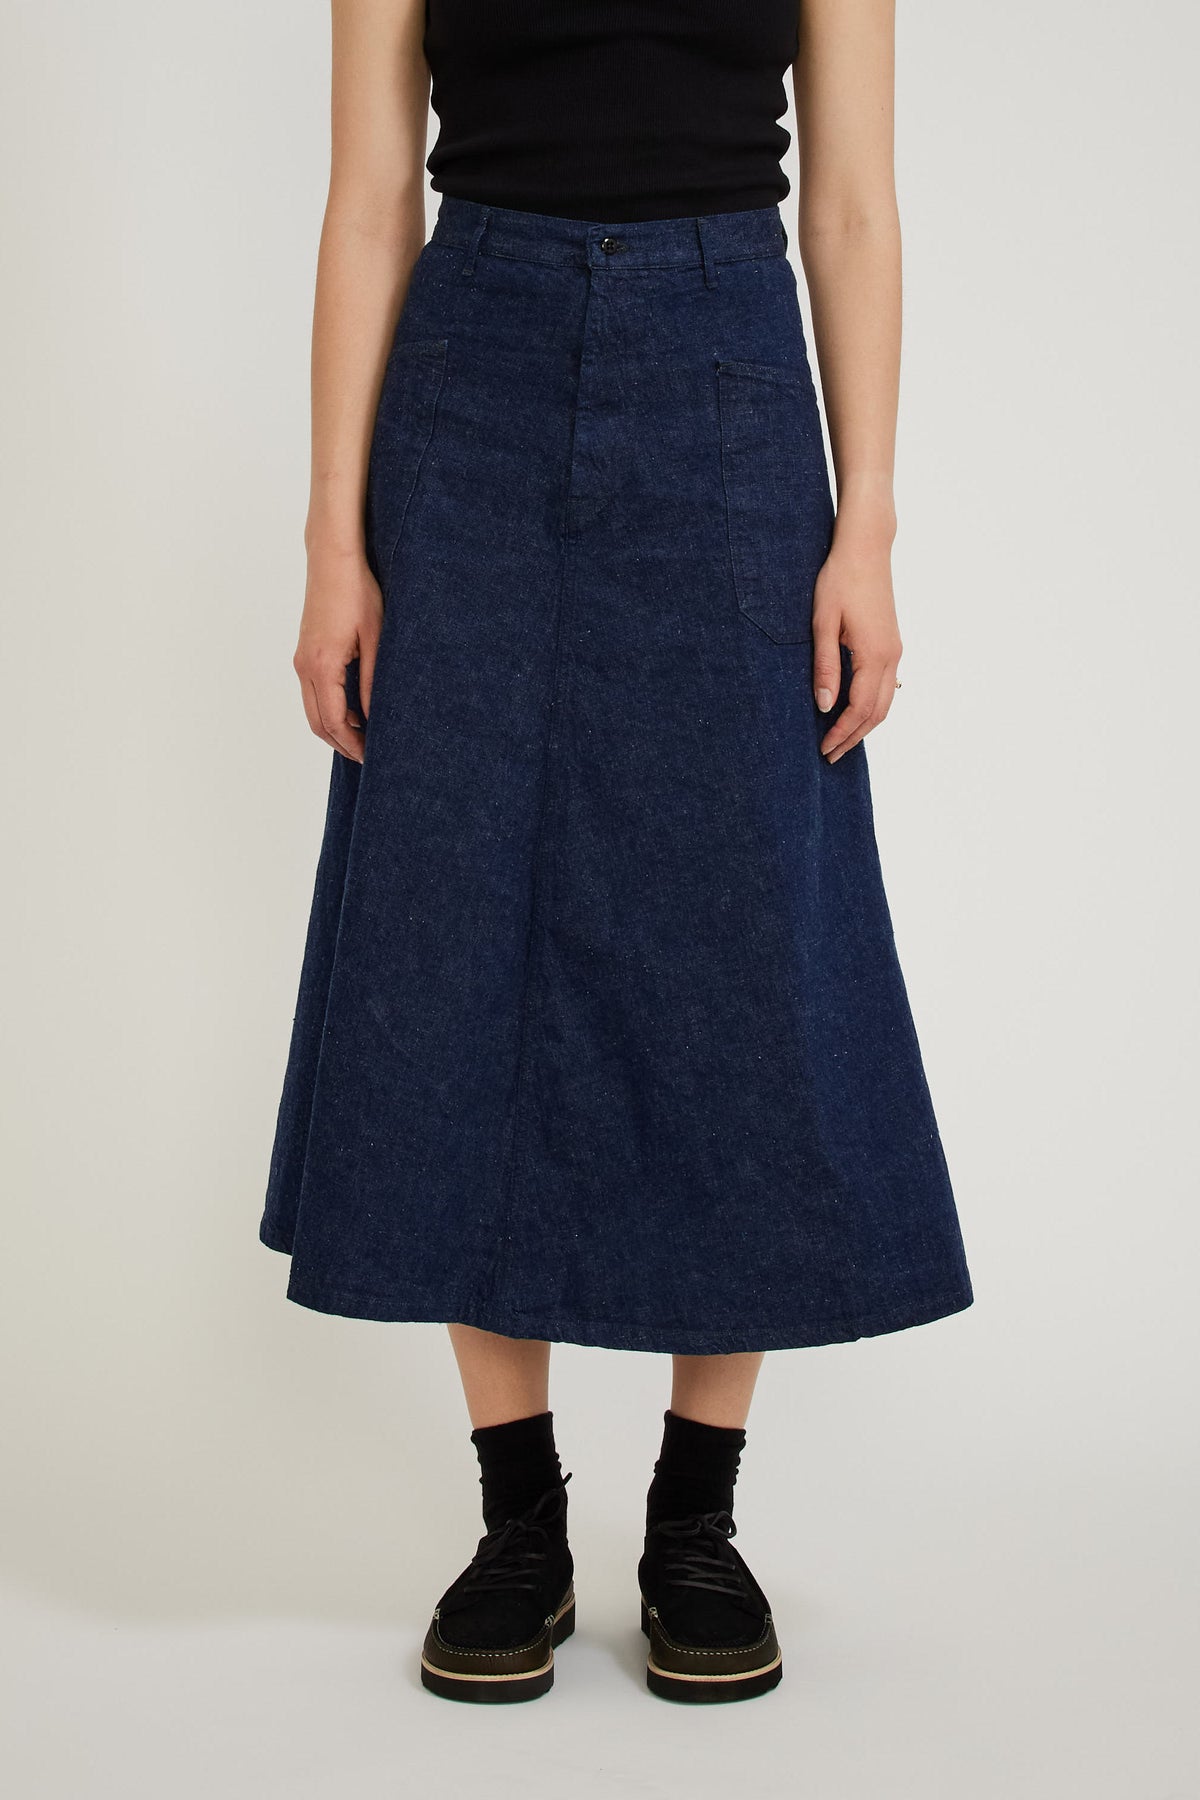 Orslow US Navy Side Seamless Denim Long Skirt | Maplestore